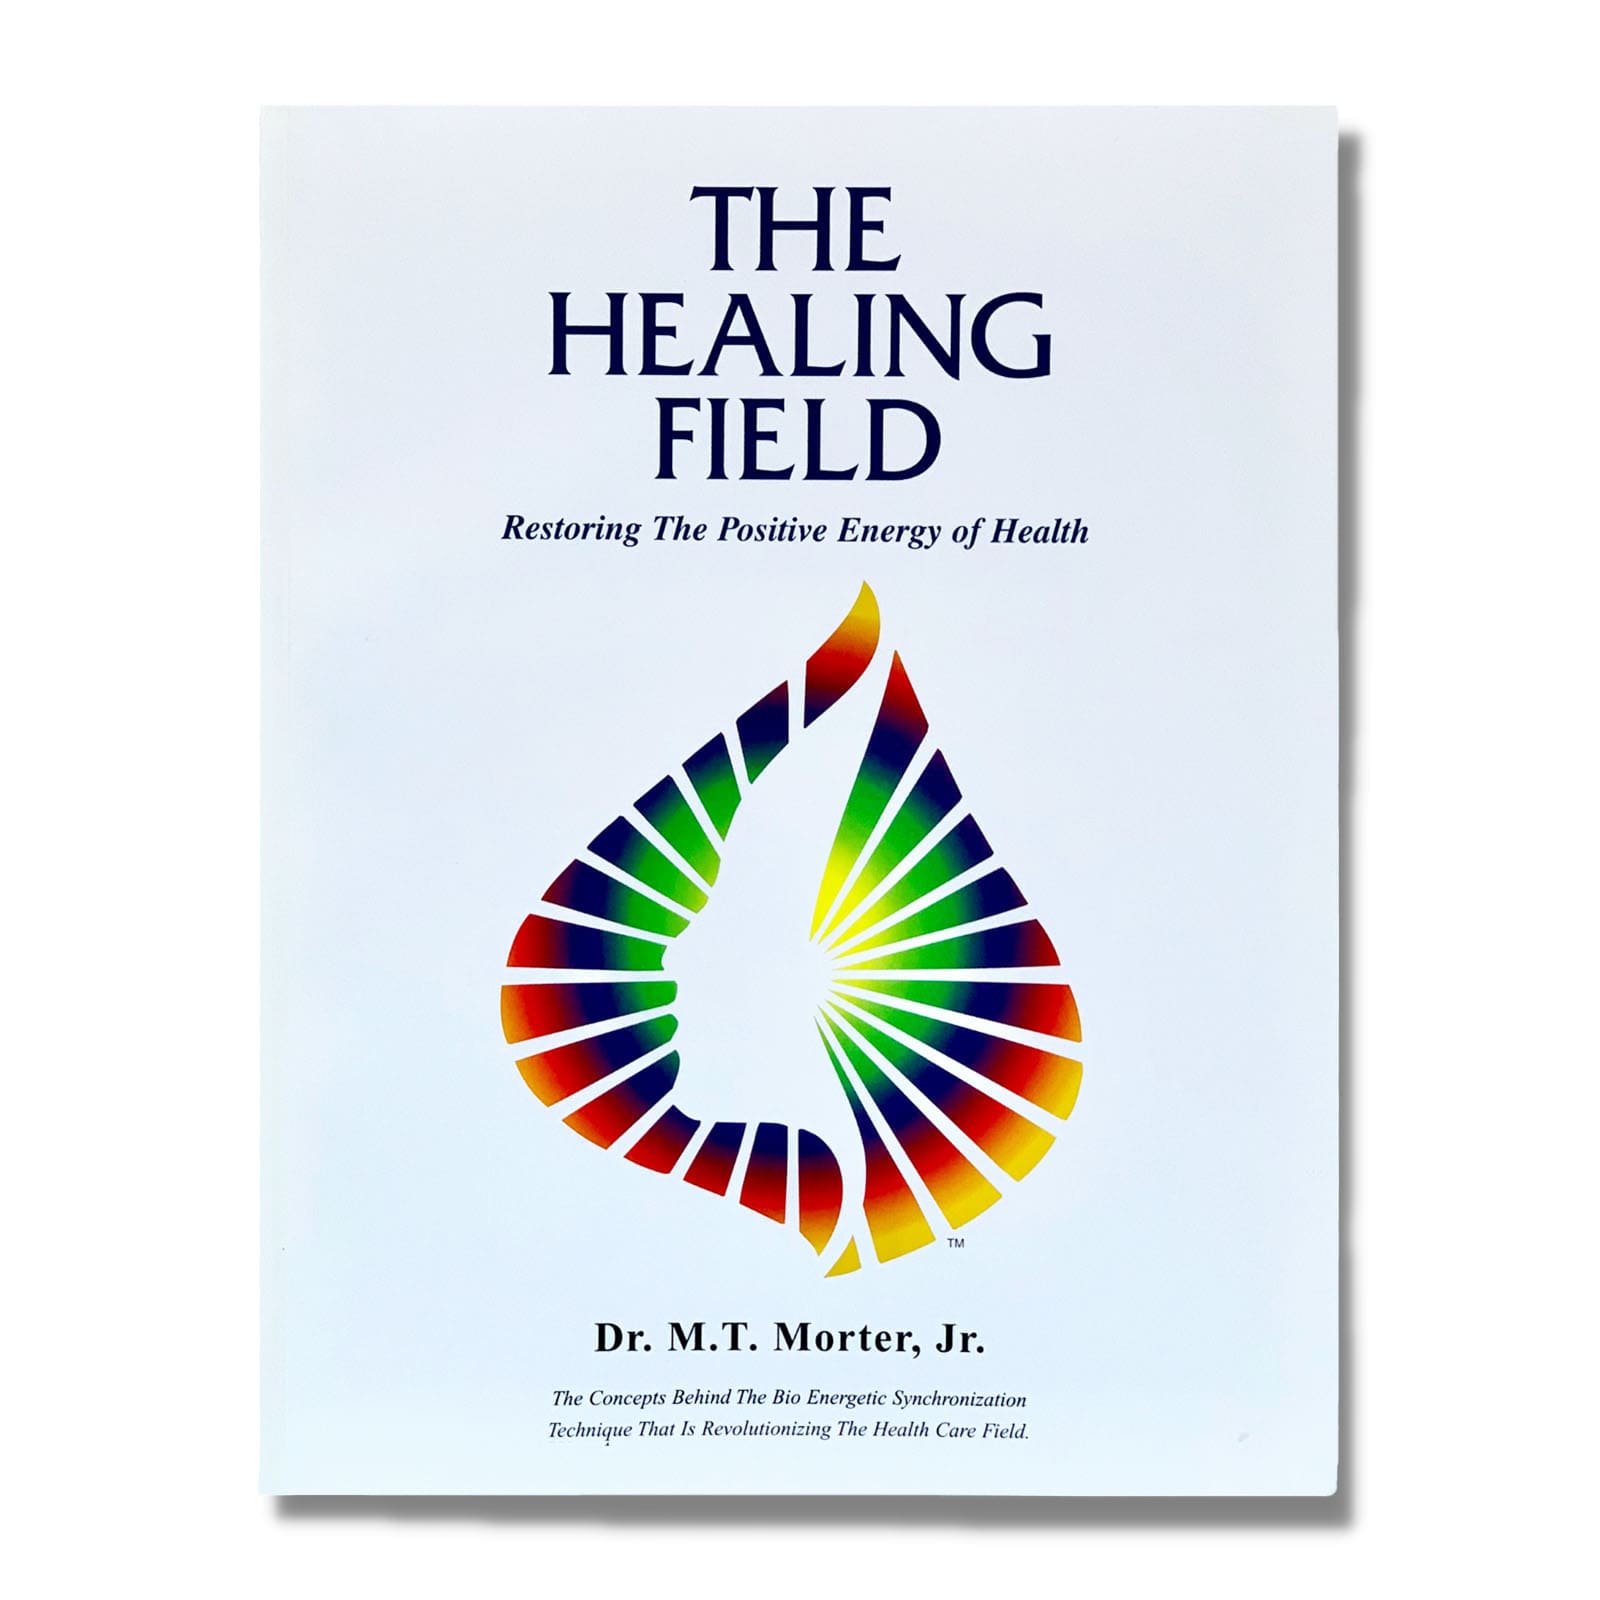 Healing Field